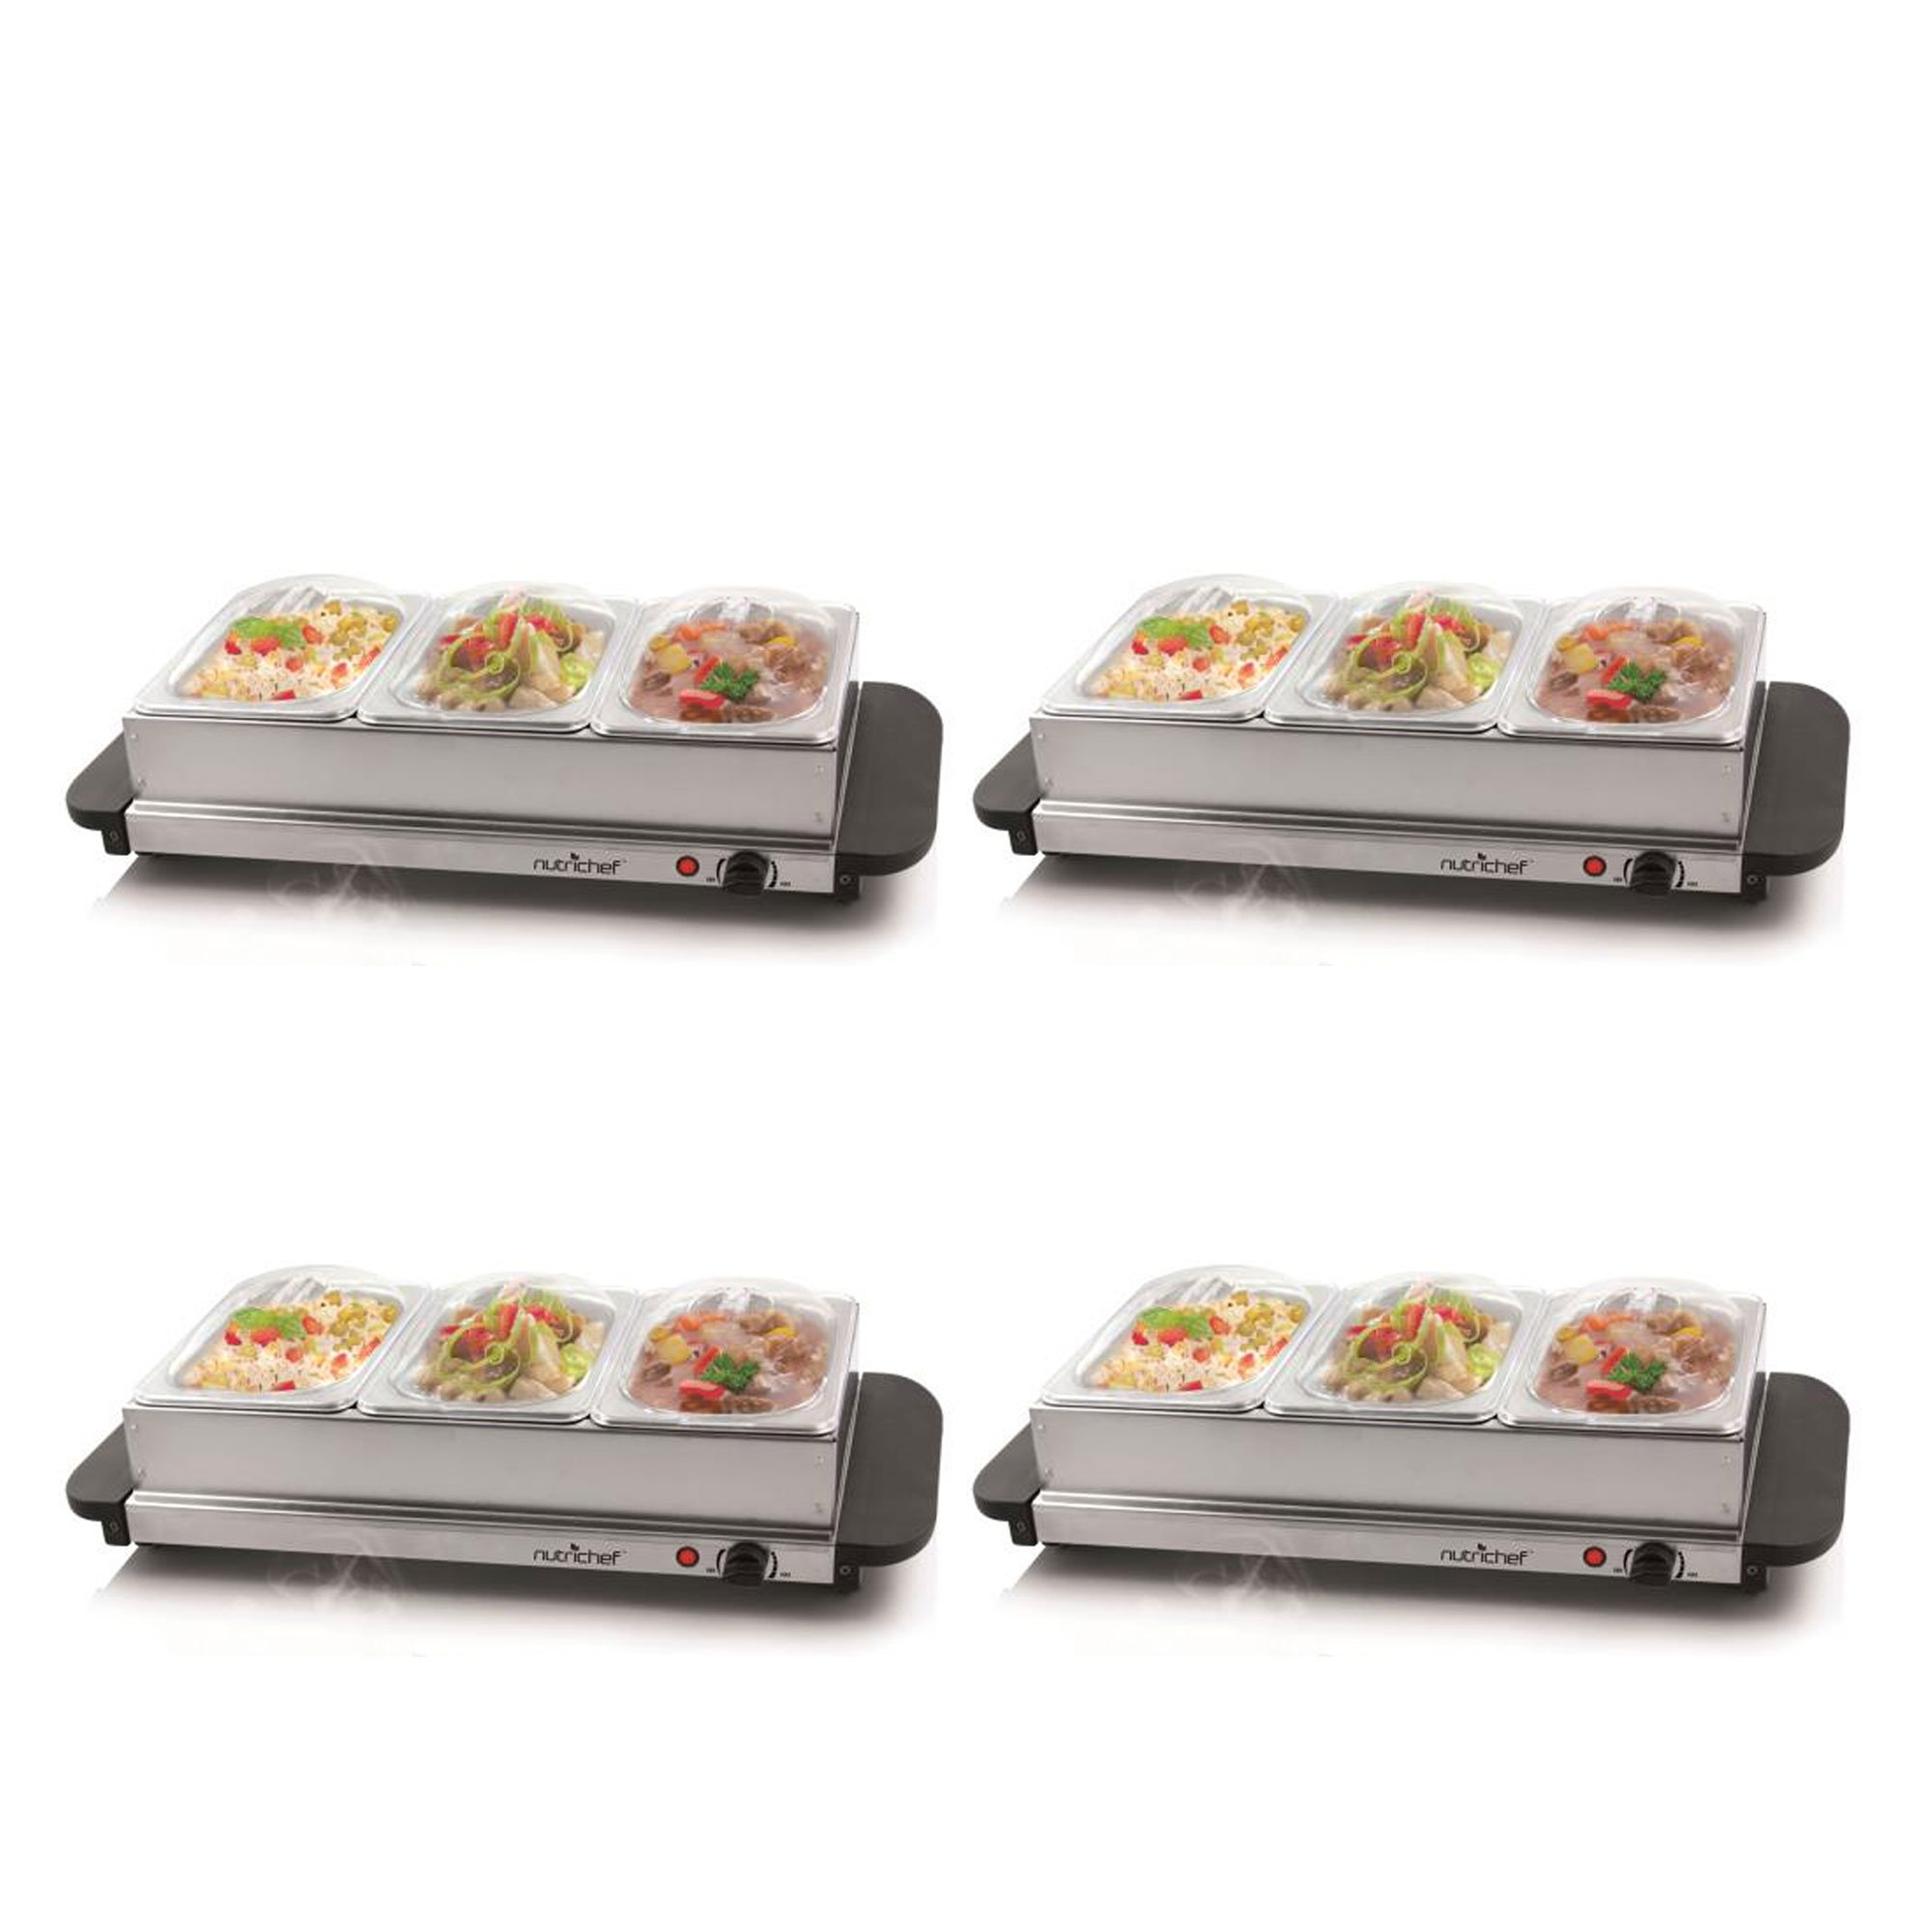 NutriChef PKBFWM33 - Food Warming Tray / Buffet Server / Hot Plate Warmer 